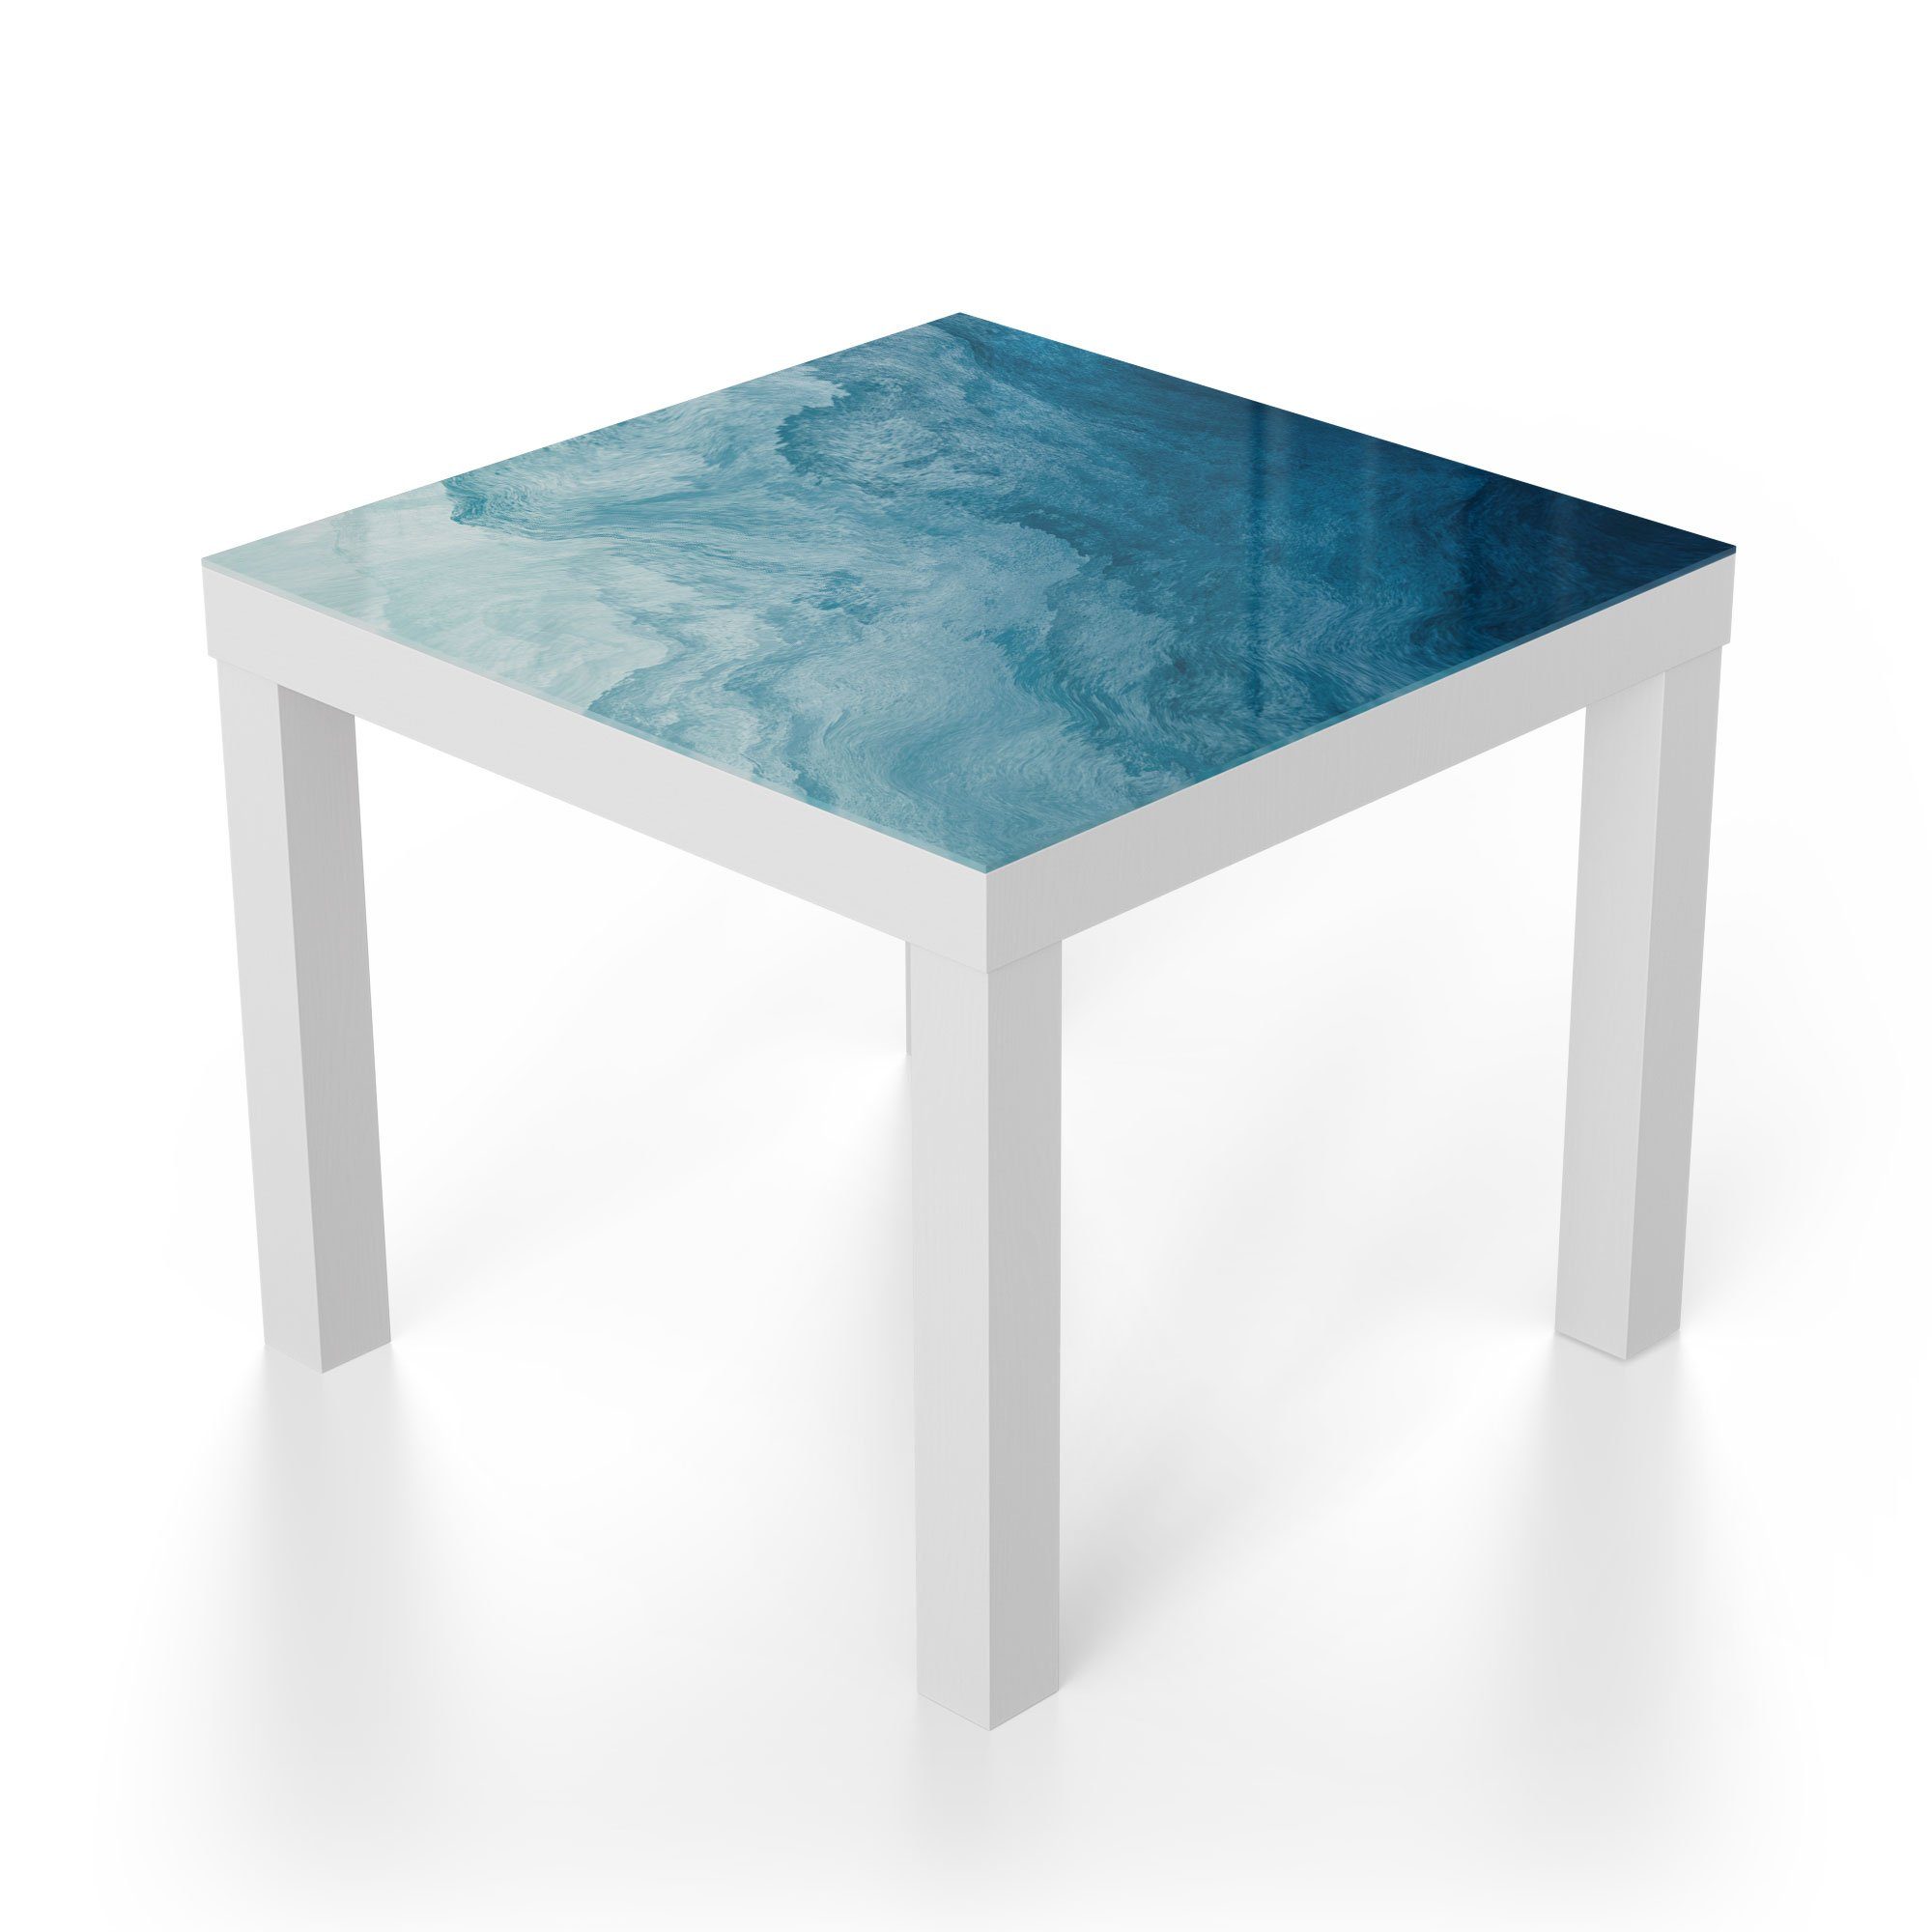 Glastisch Beistelltisch Wellen', DEQORI modern Weiß 'Aufgewühlte Couchtisch Glas